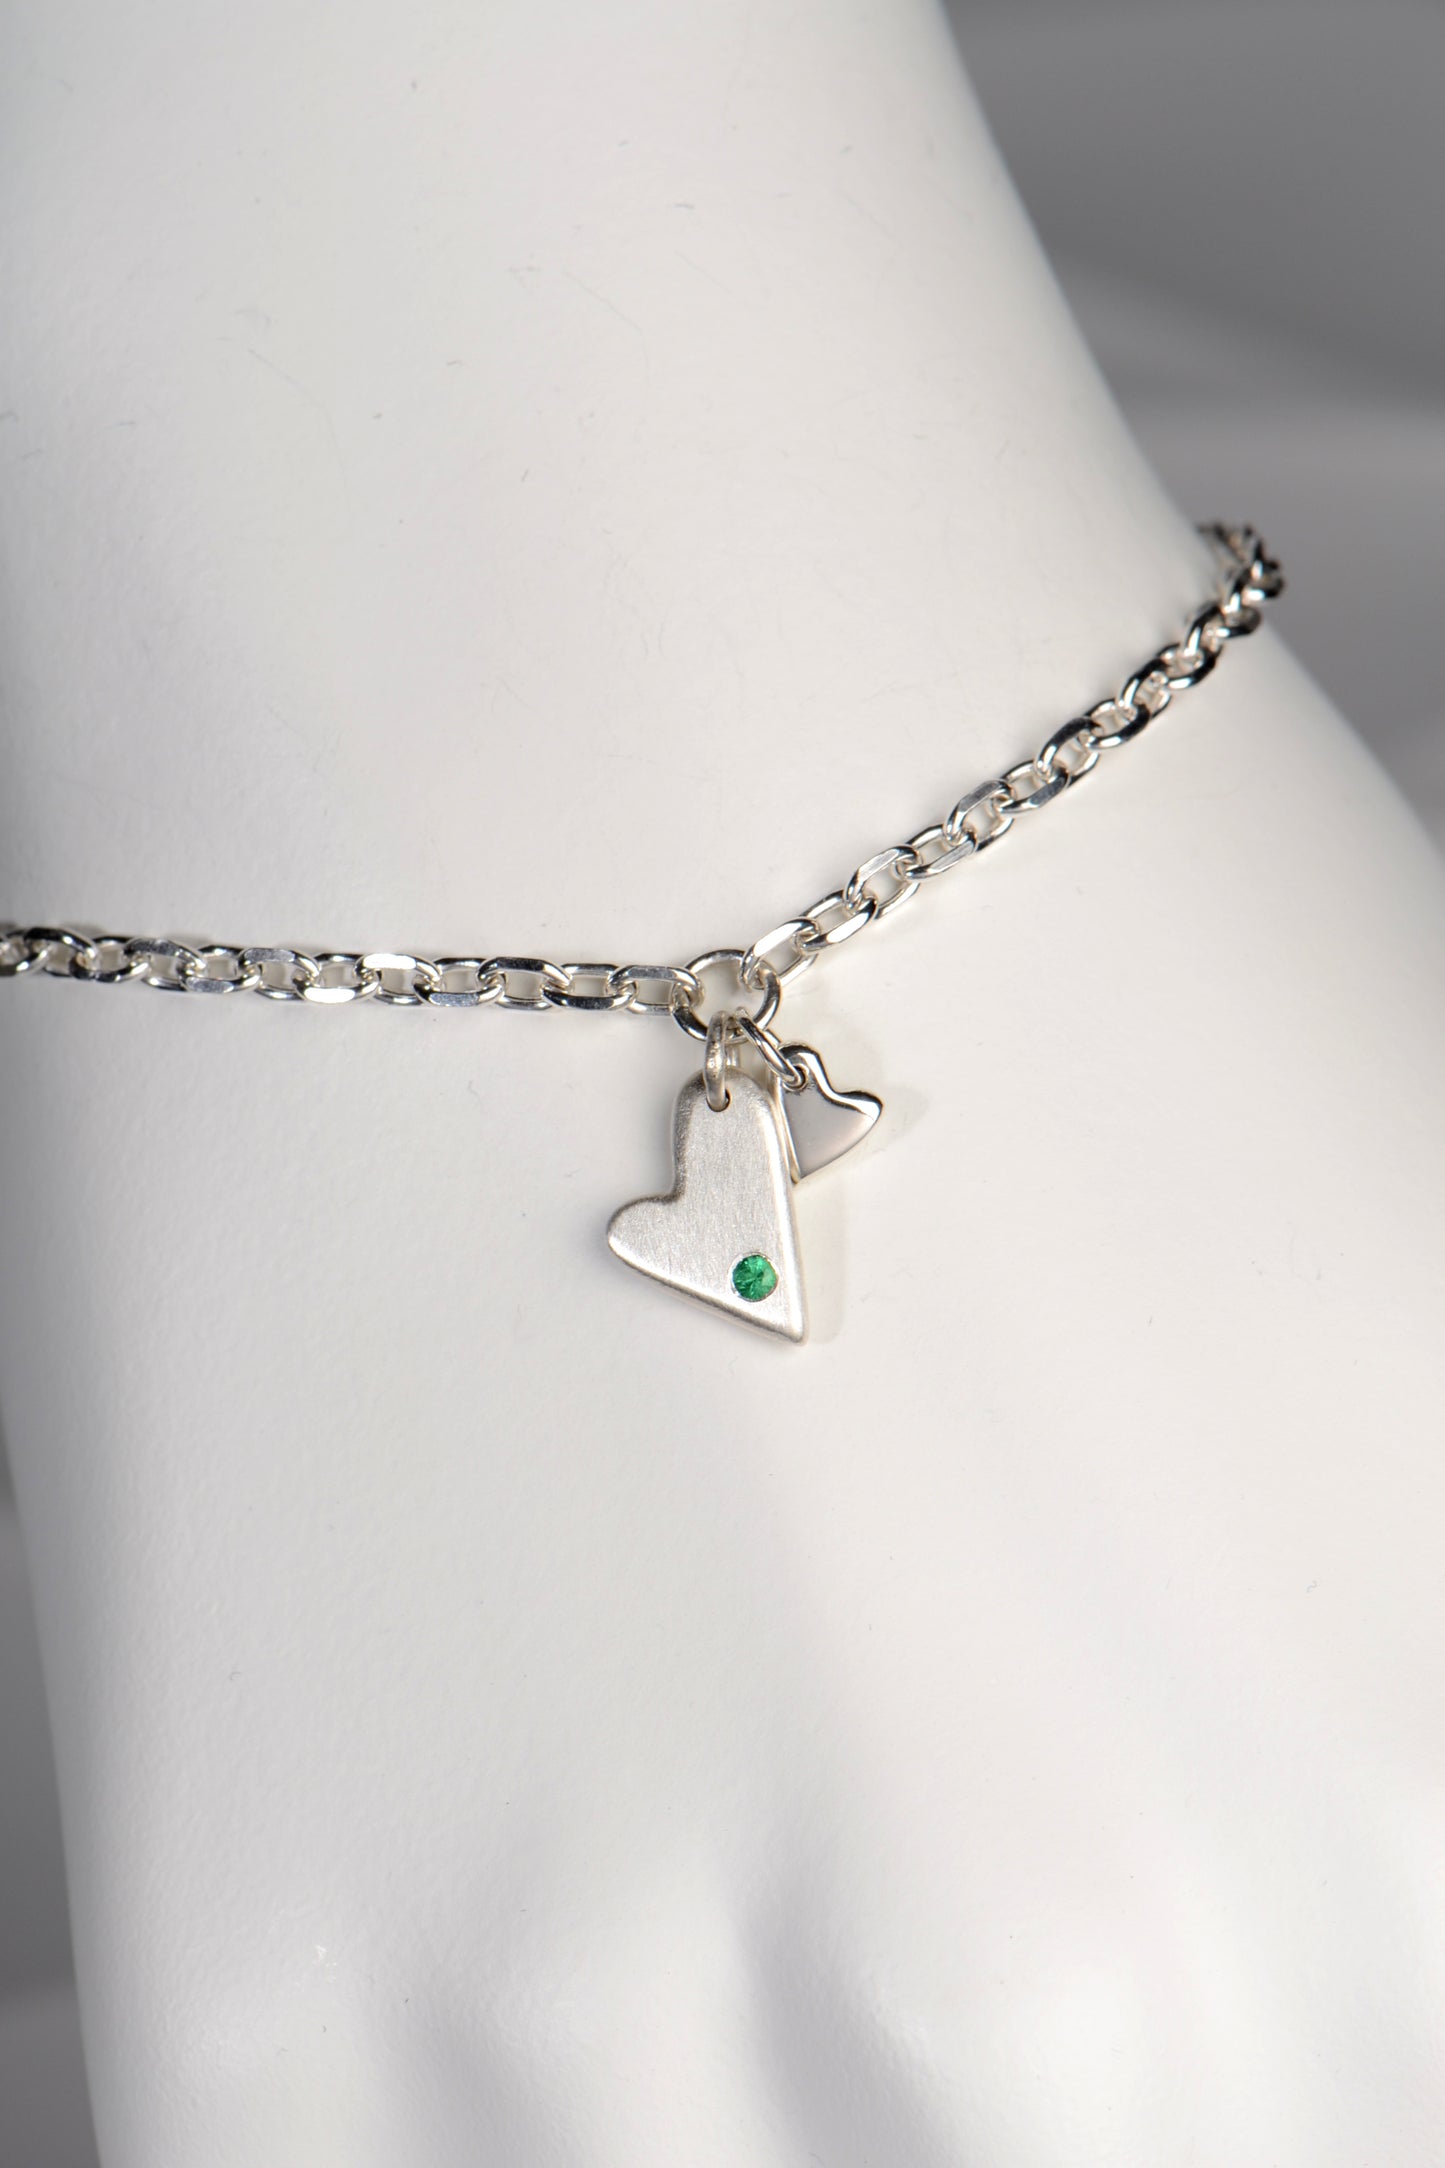 Emerald Heart Bracelet